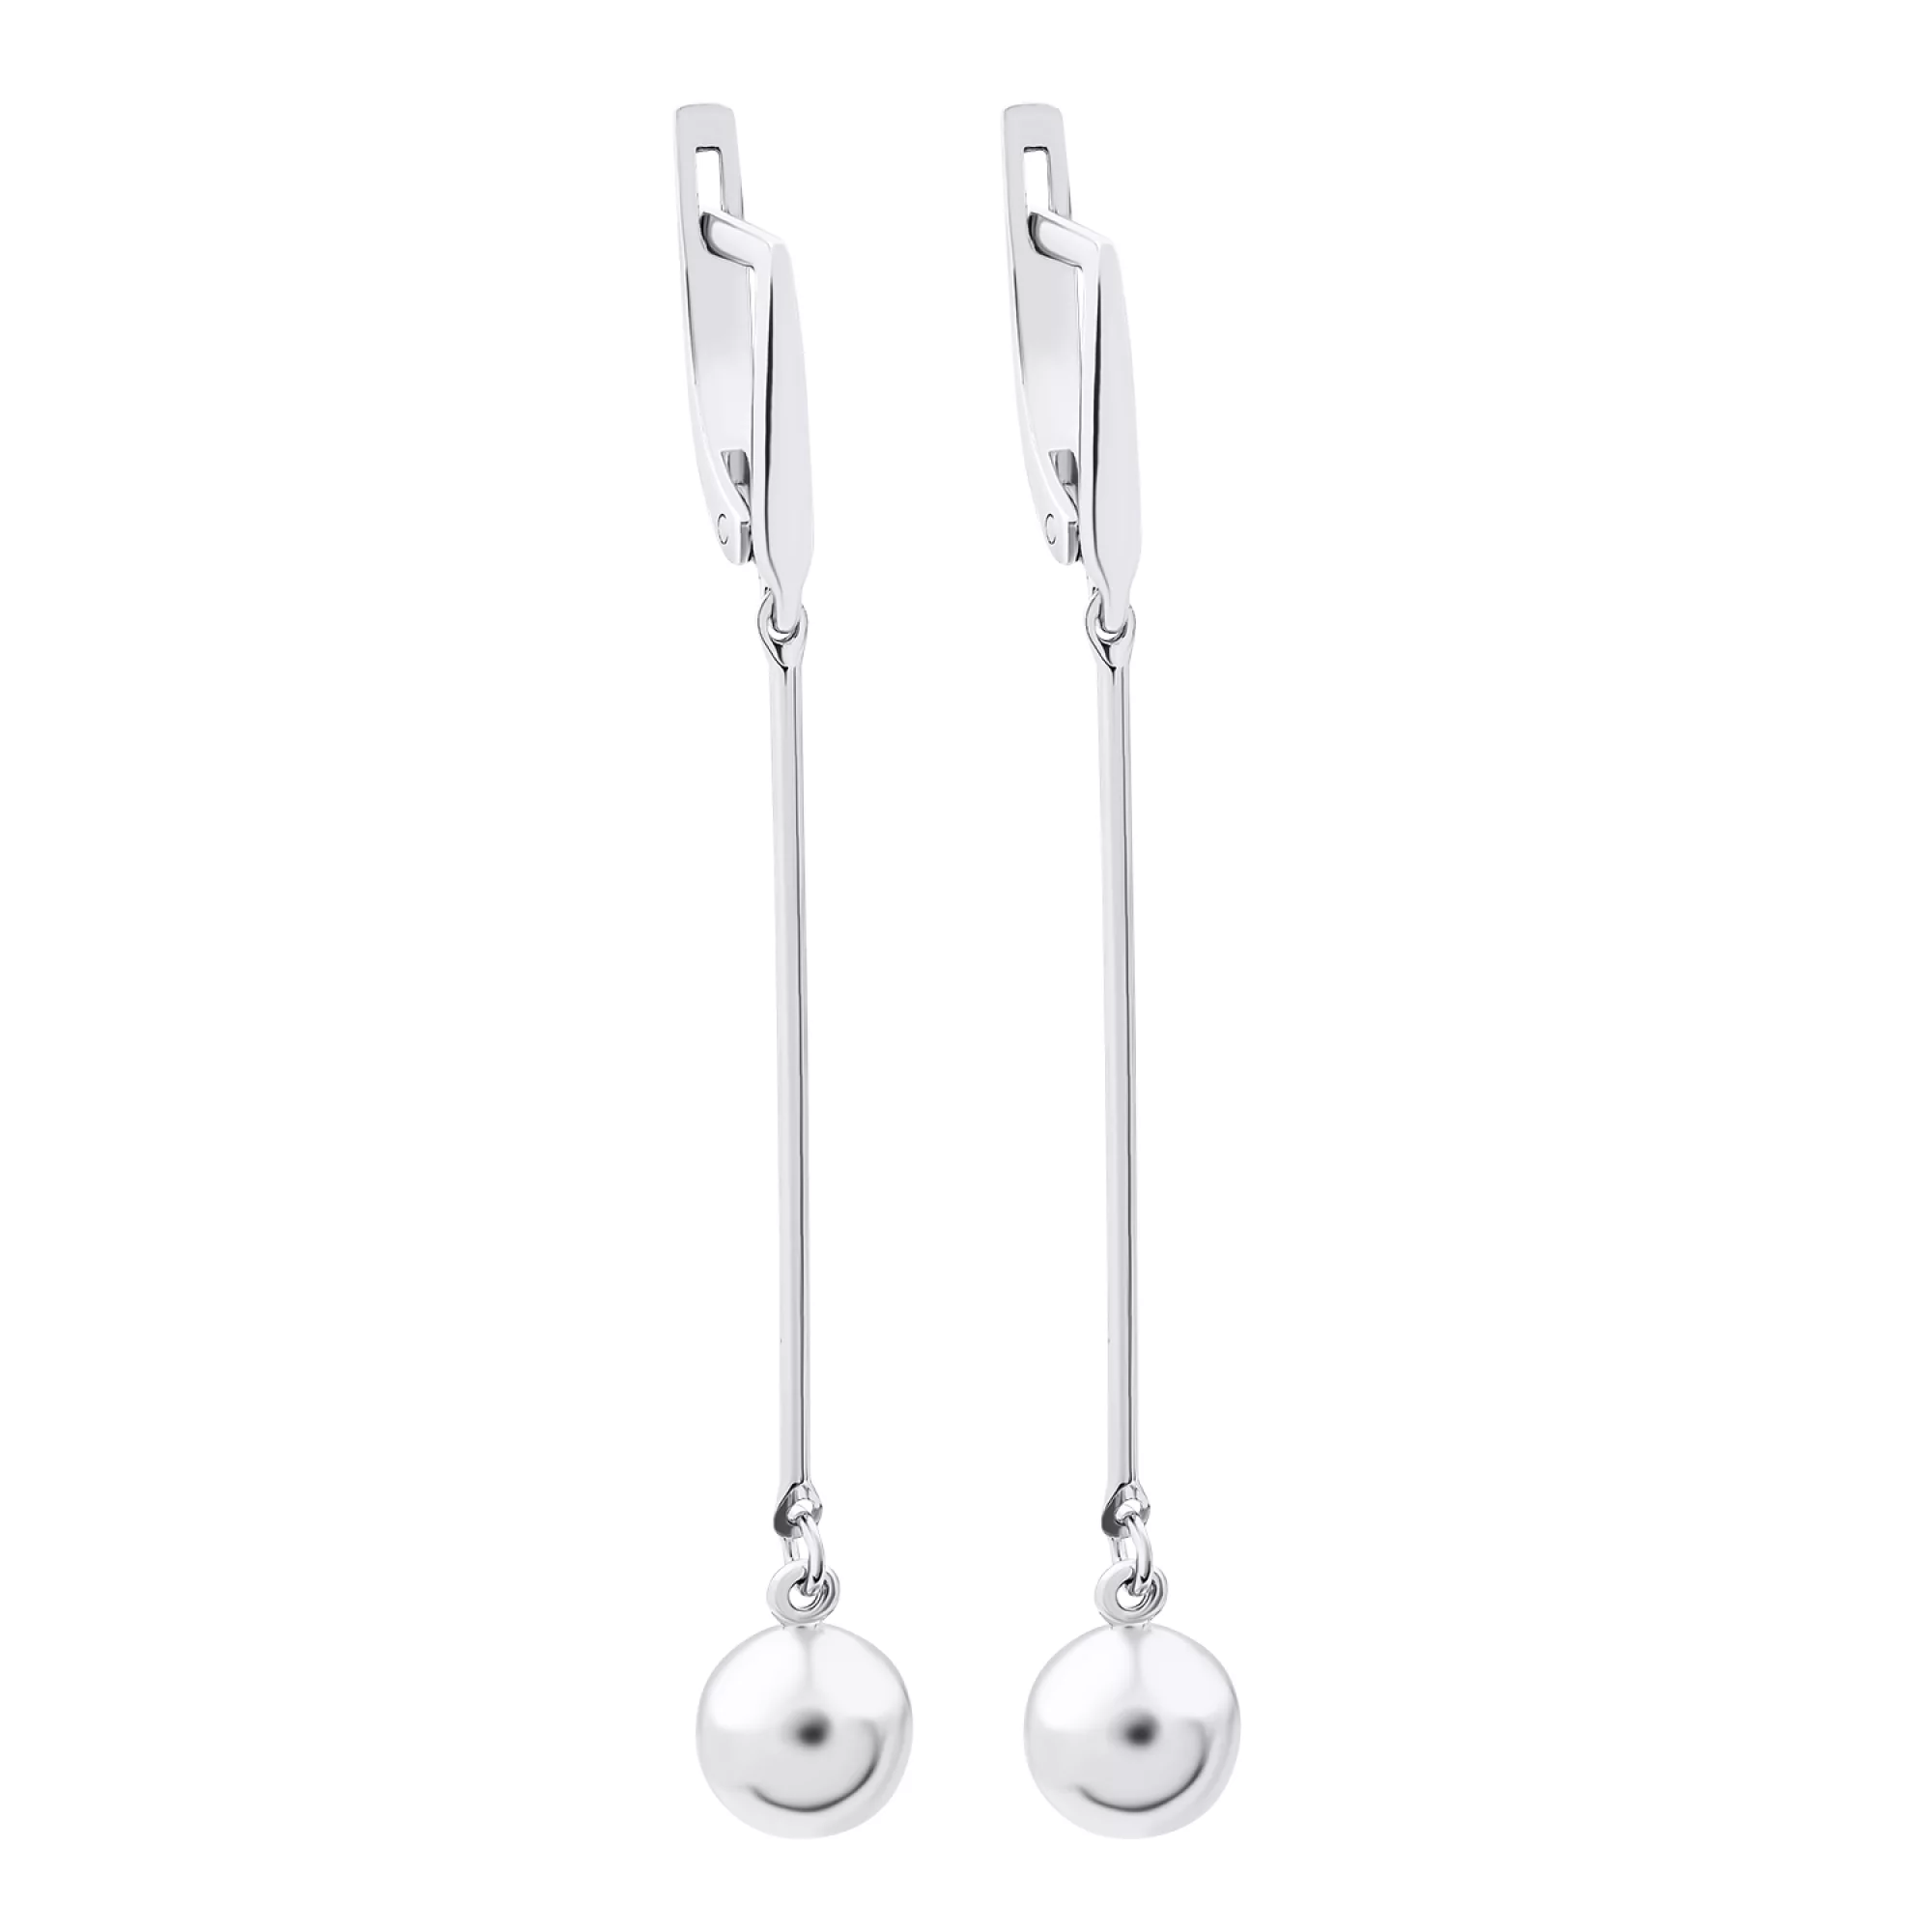 Срібні сережки з підвісками "Кулі" - 1520713 – зображення 1